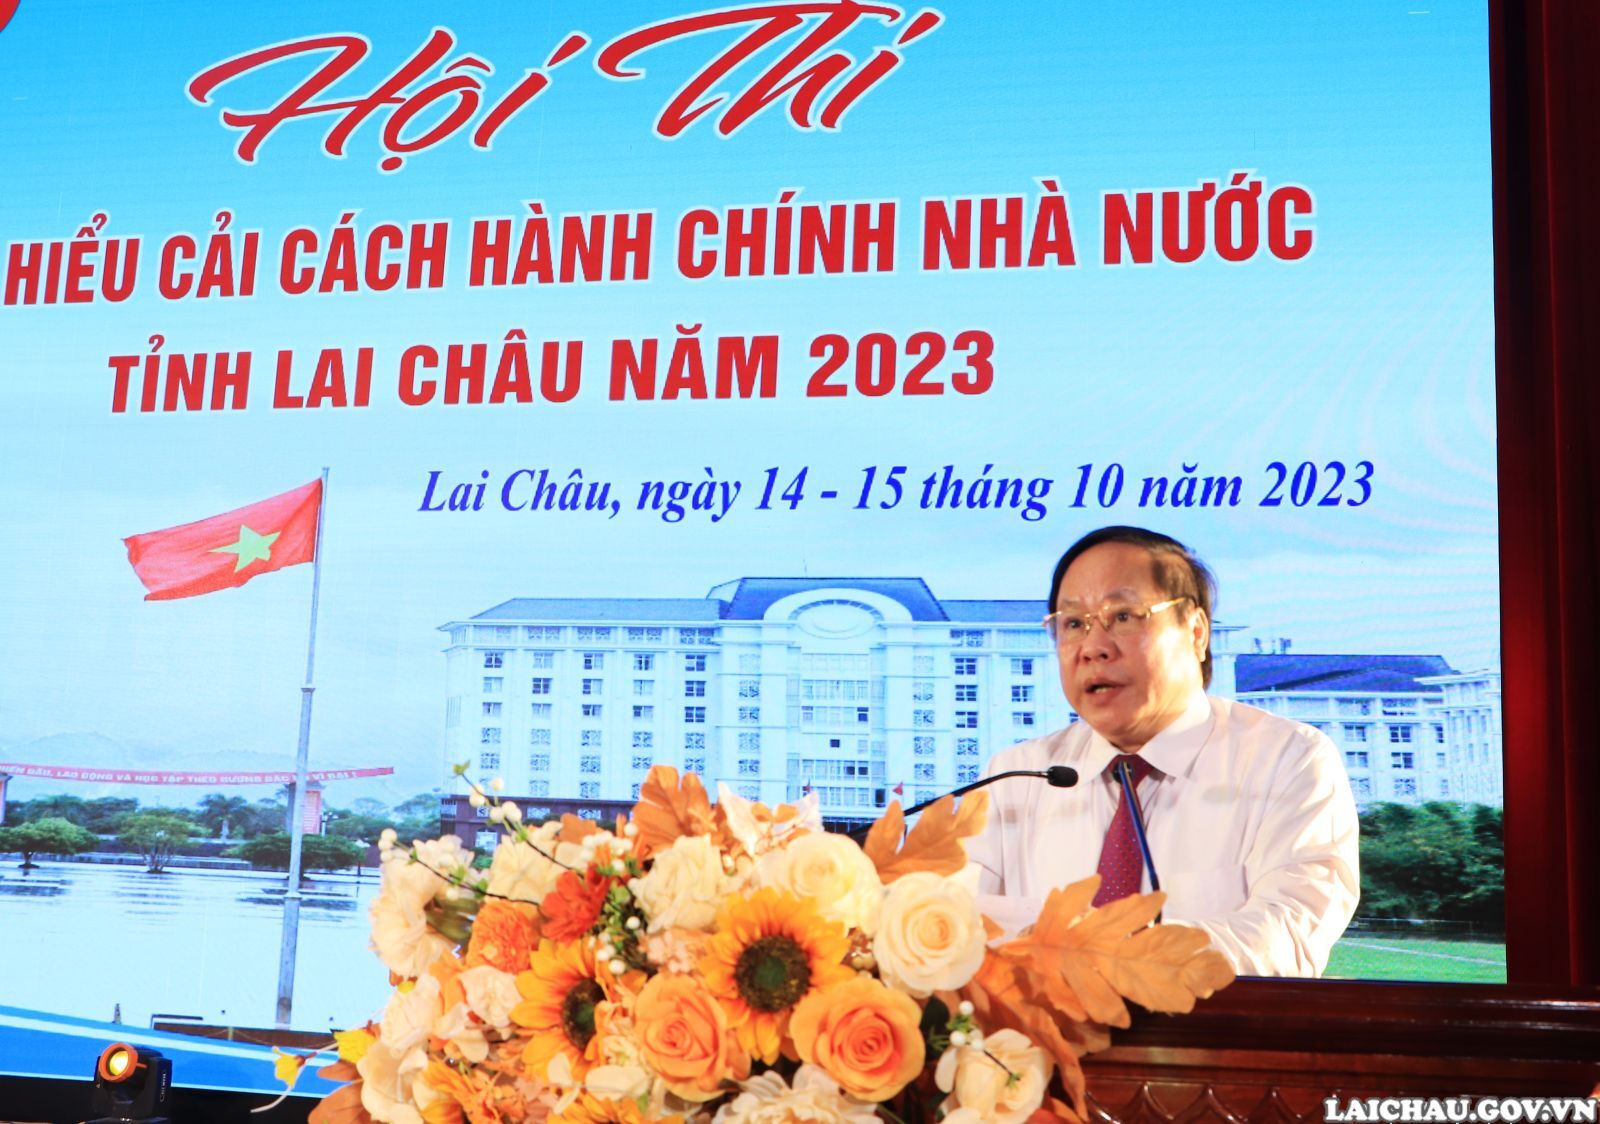 Văn phòng UBND tỉnh giành giải Nhất Hội thi tìm hiểu cải cách hành chính Nhà nước tỉnh Lai Châu năm 2023